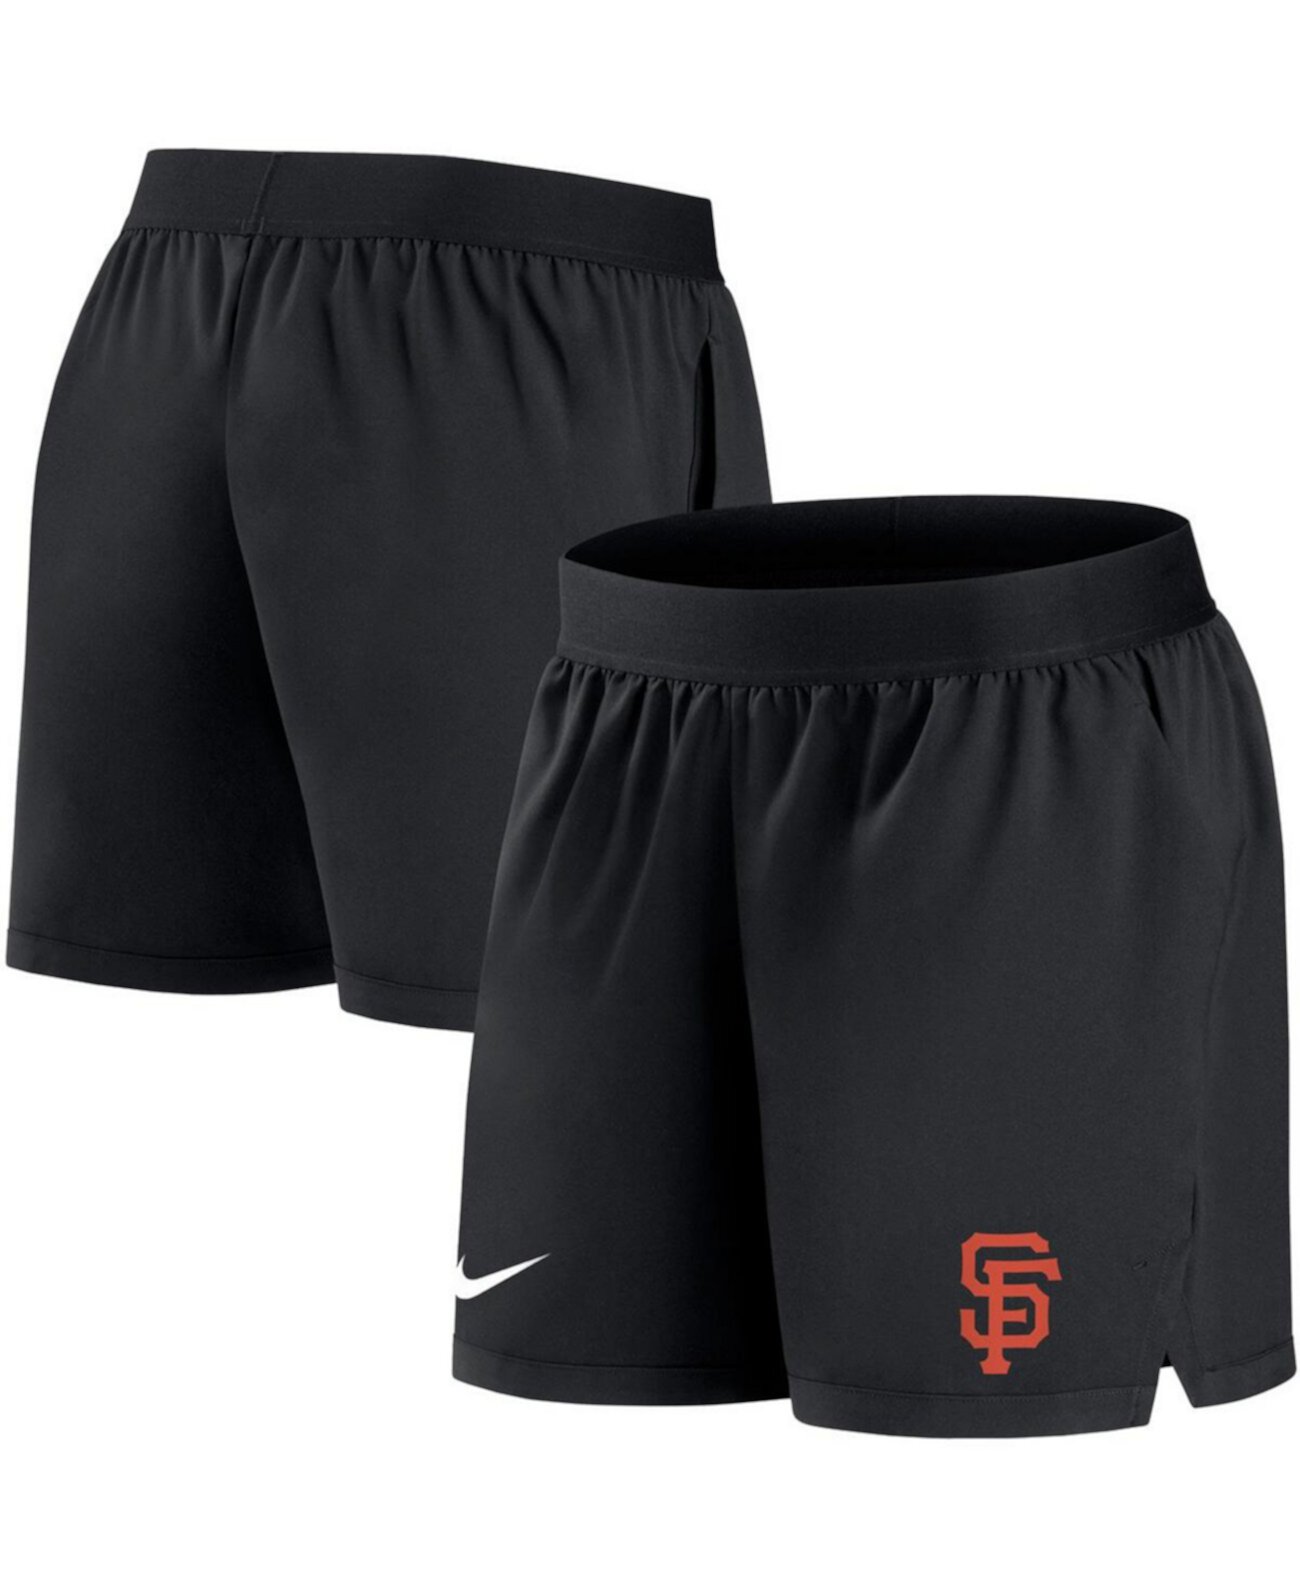 Женские черные шорты San Francisco Giants Authentic Collection Flex Vent Max Performance Nike